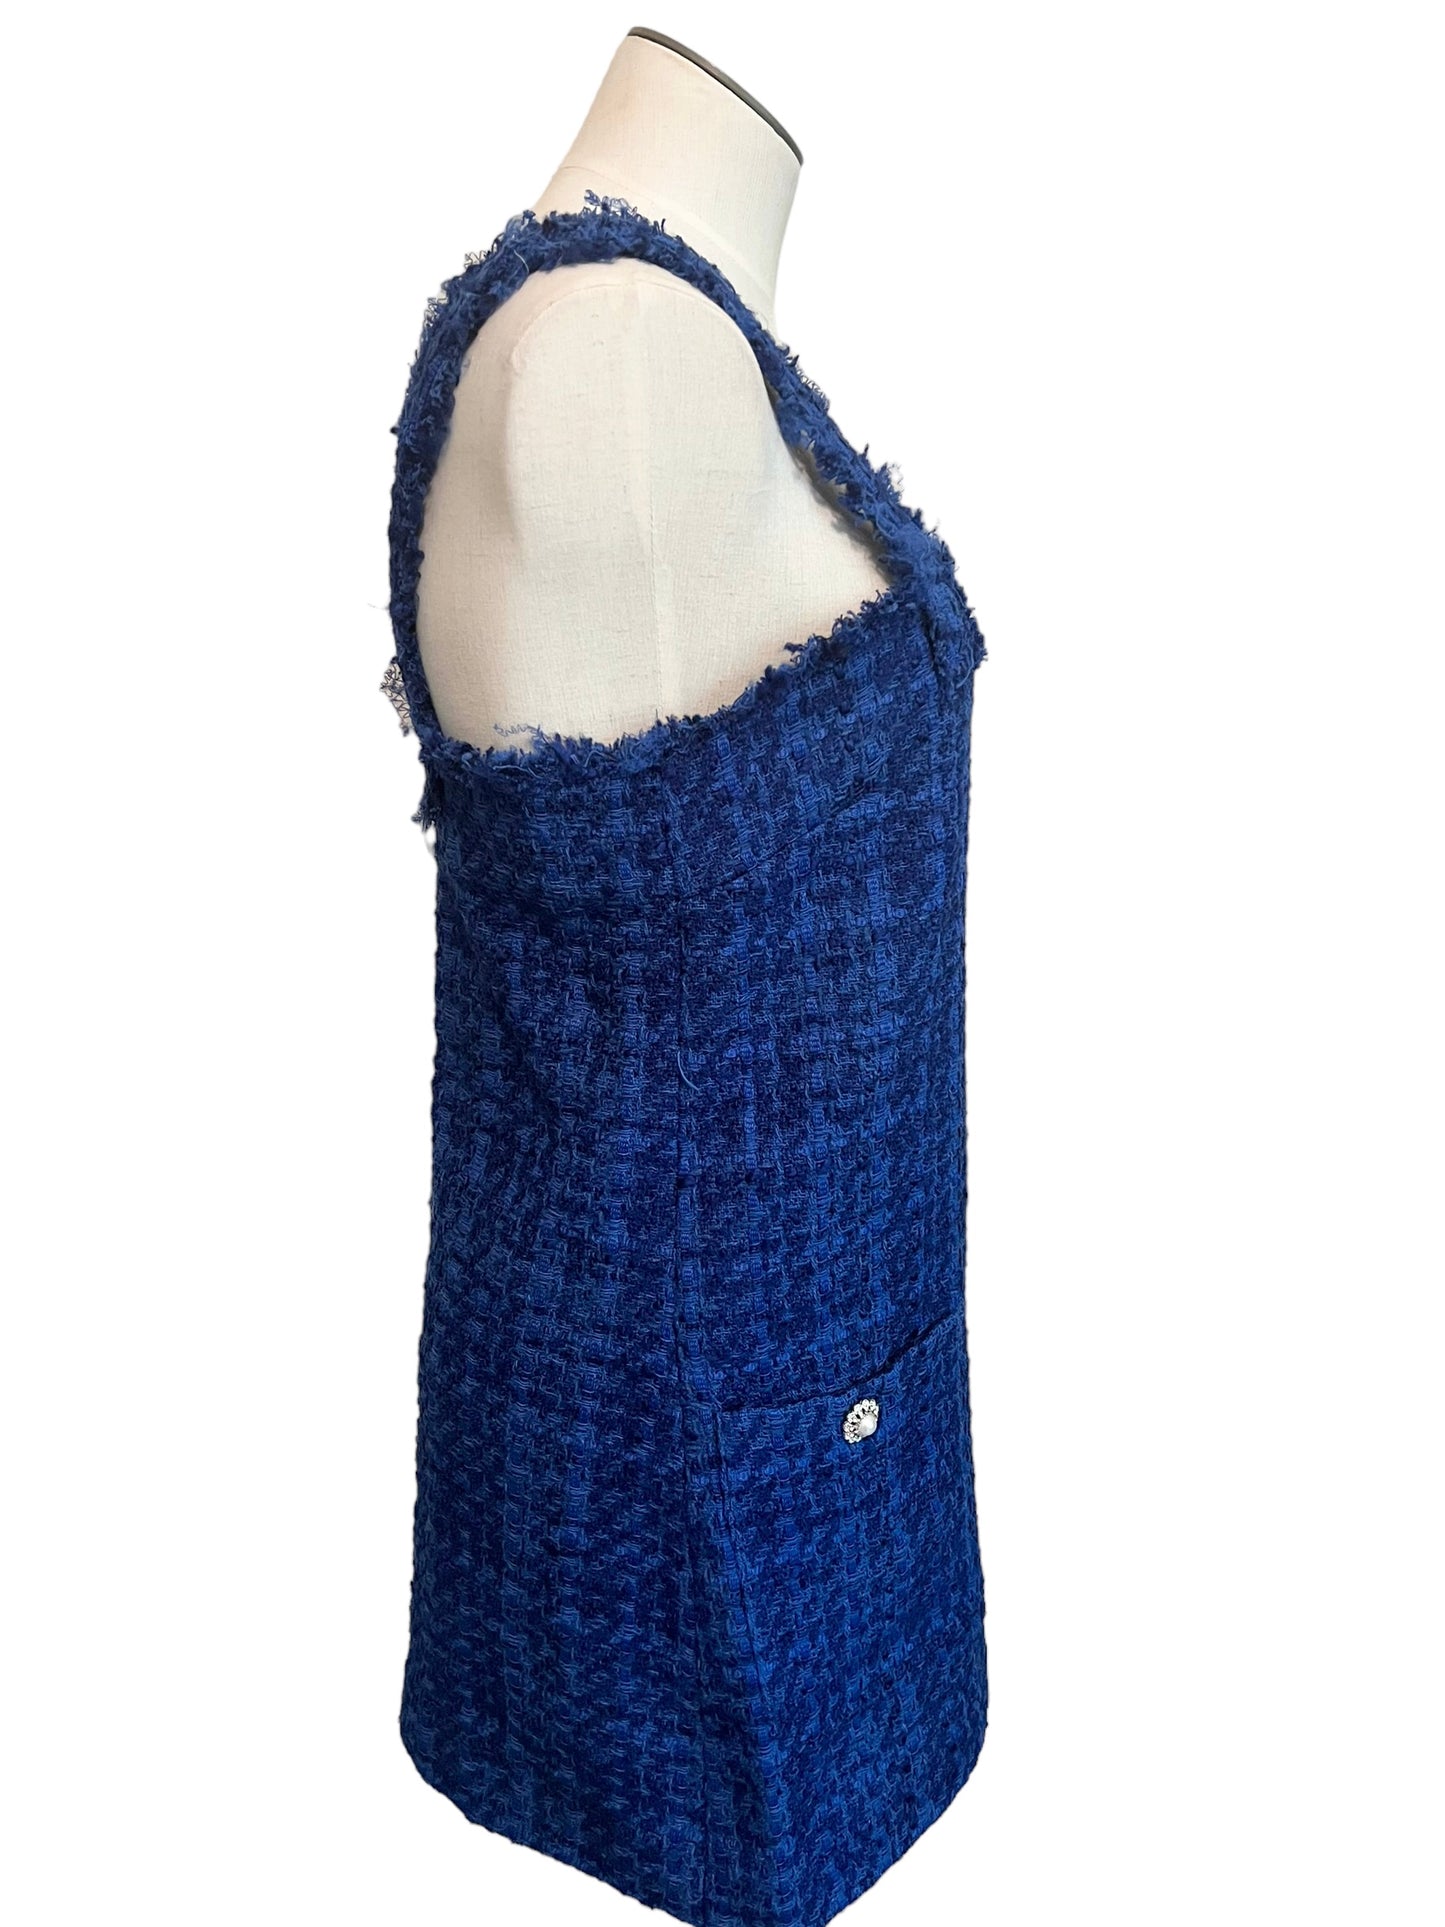 Zara Size M Blue Tweed Dress